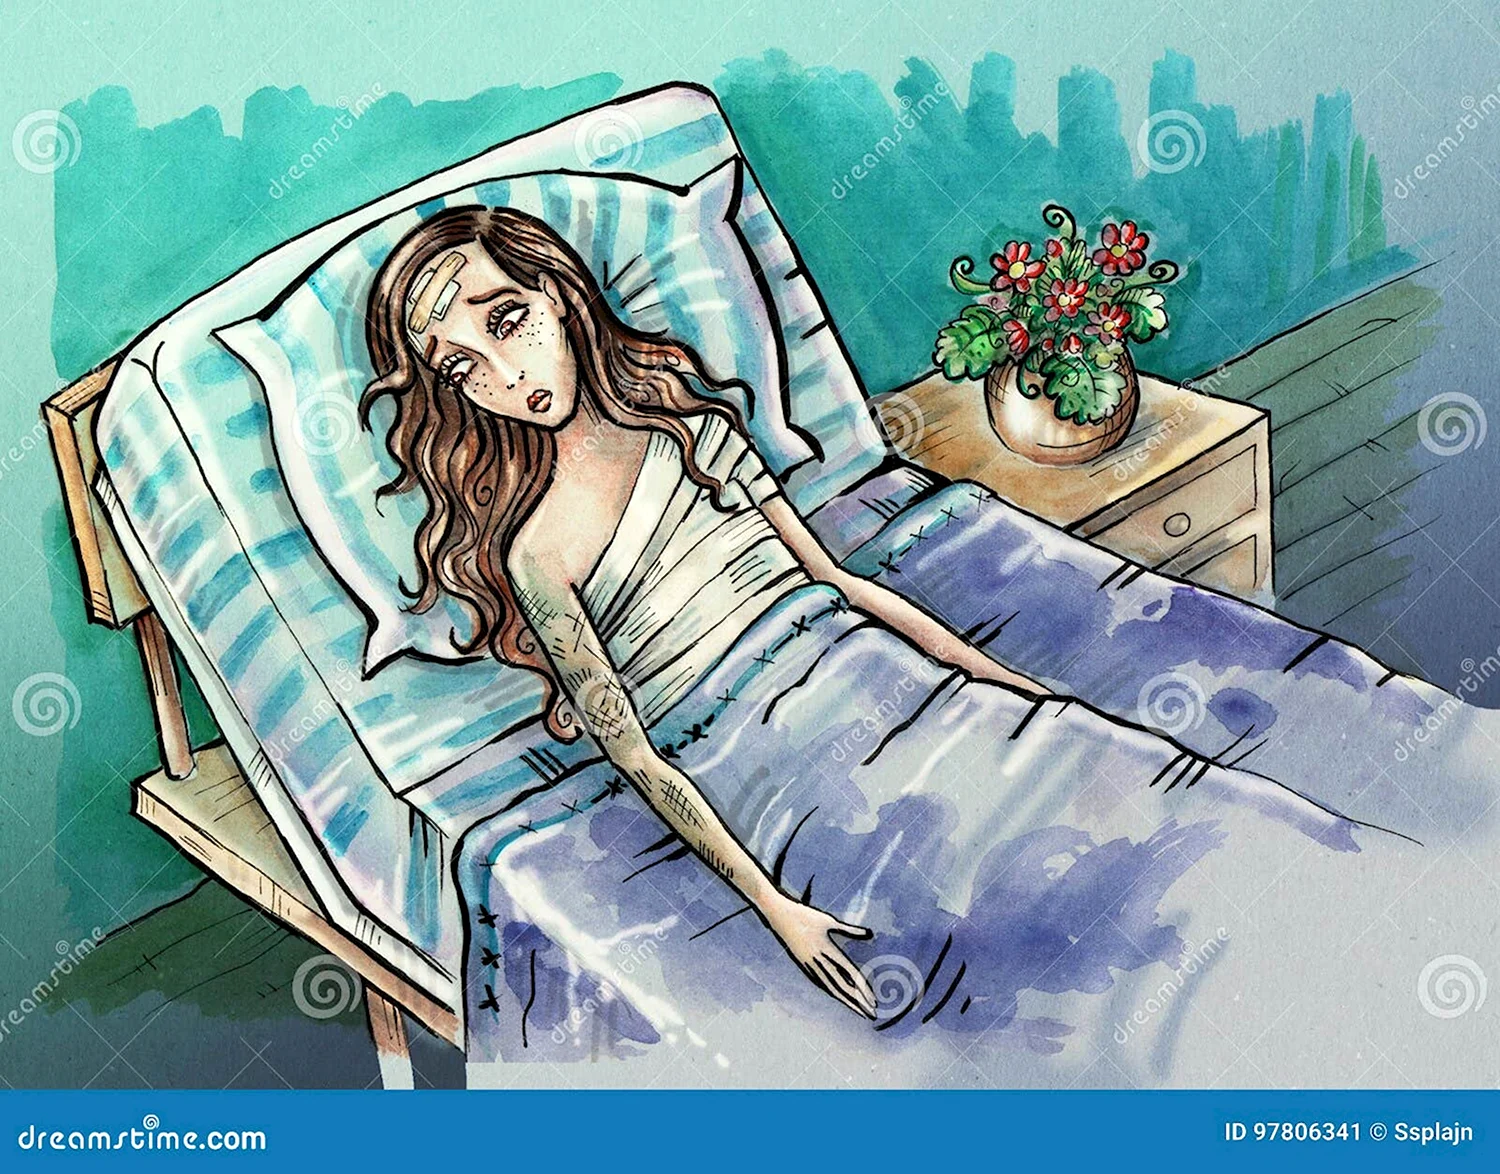 Иллюстрация девушка в кровати